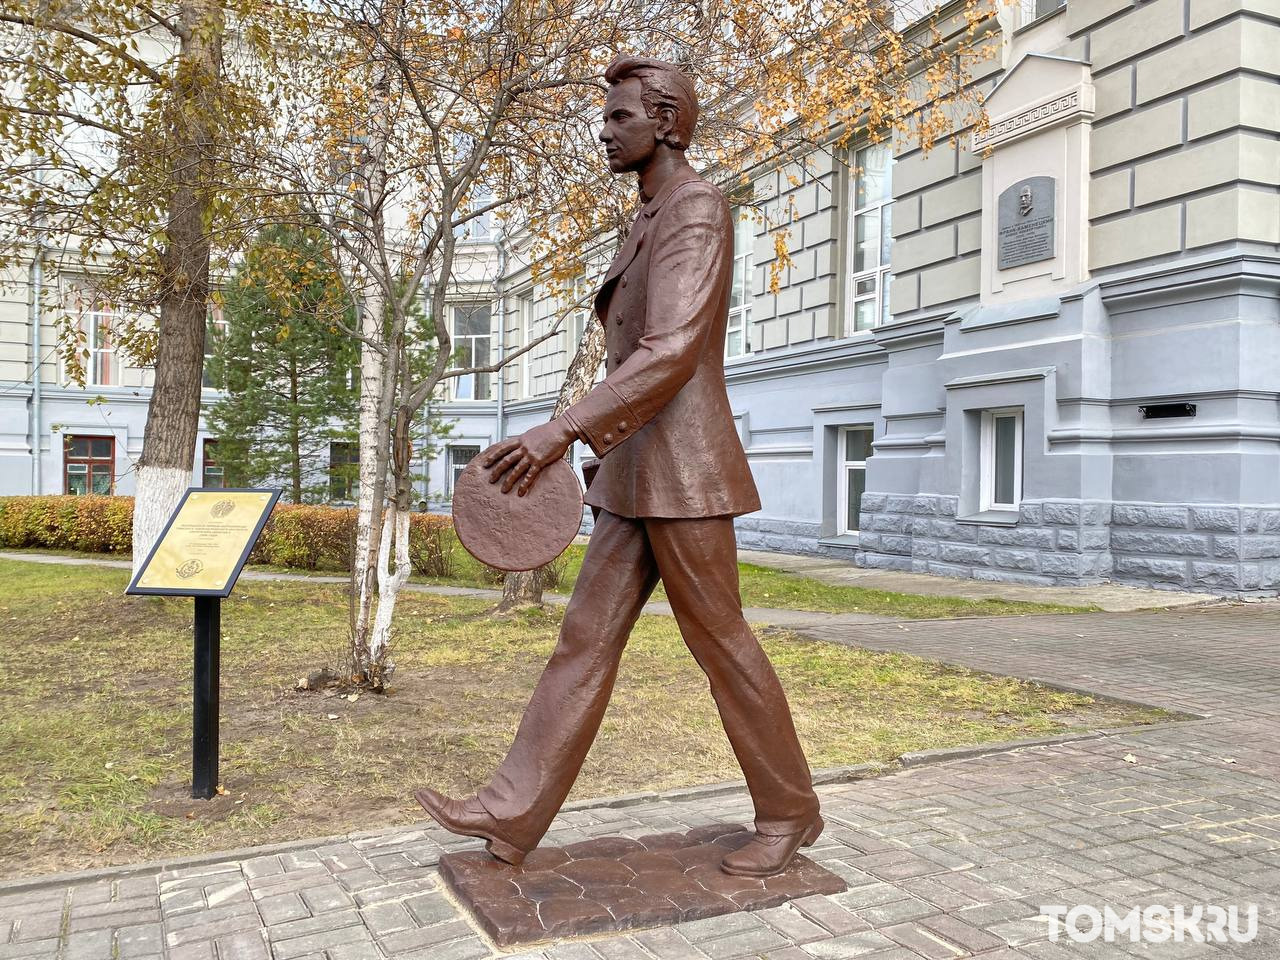 Пятый из «битлов» или первый выпускник ТПУ: новая достопримечательность в Томске